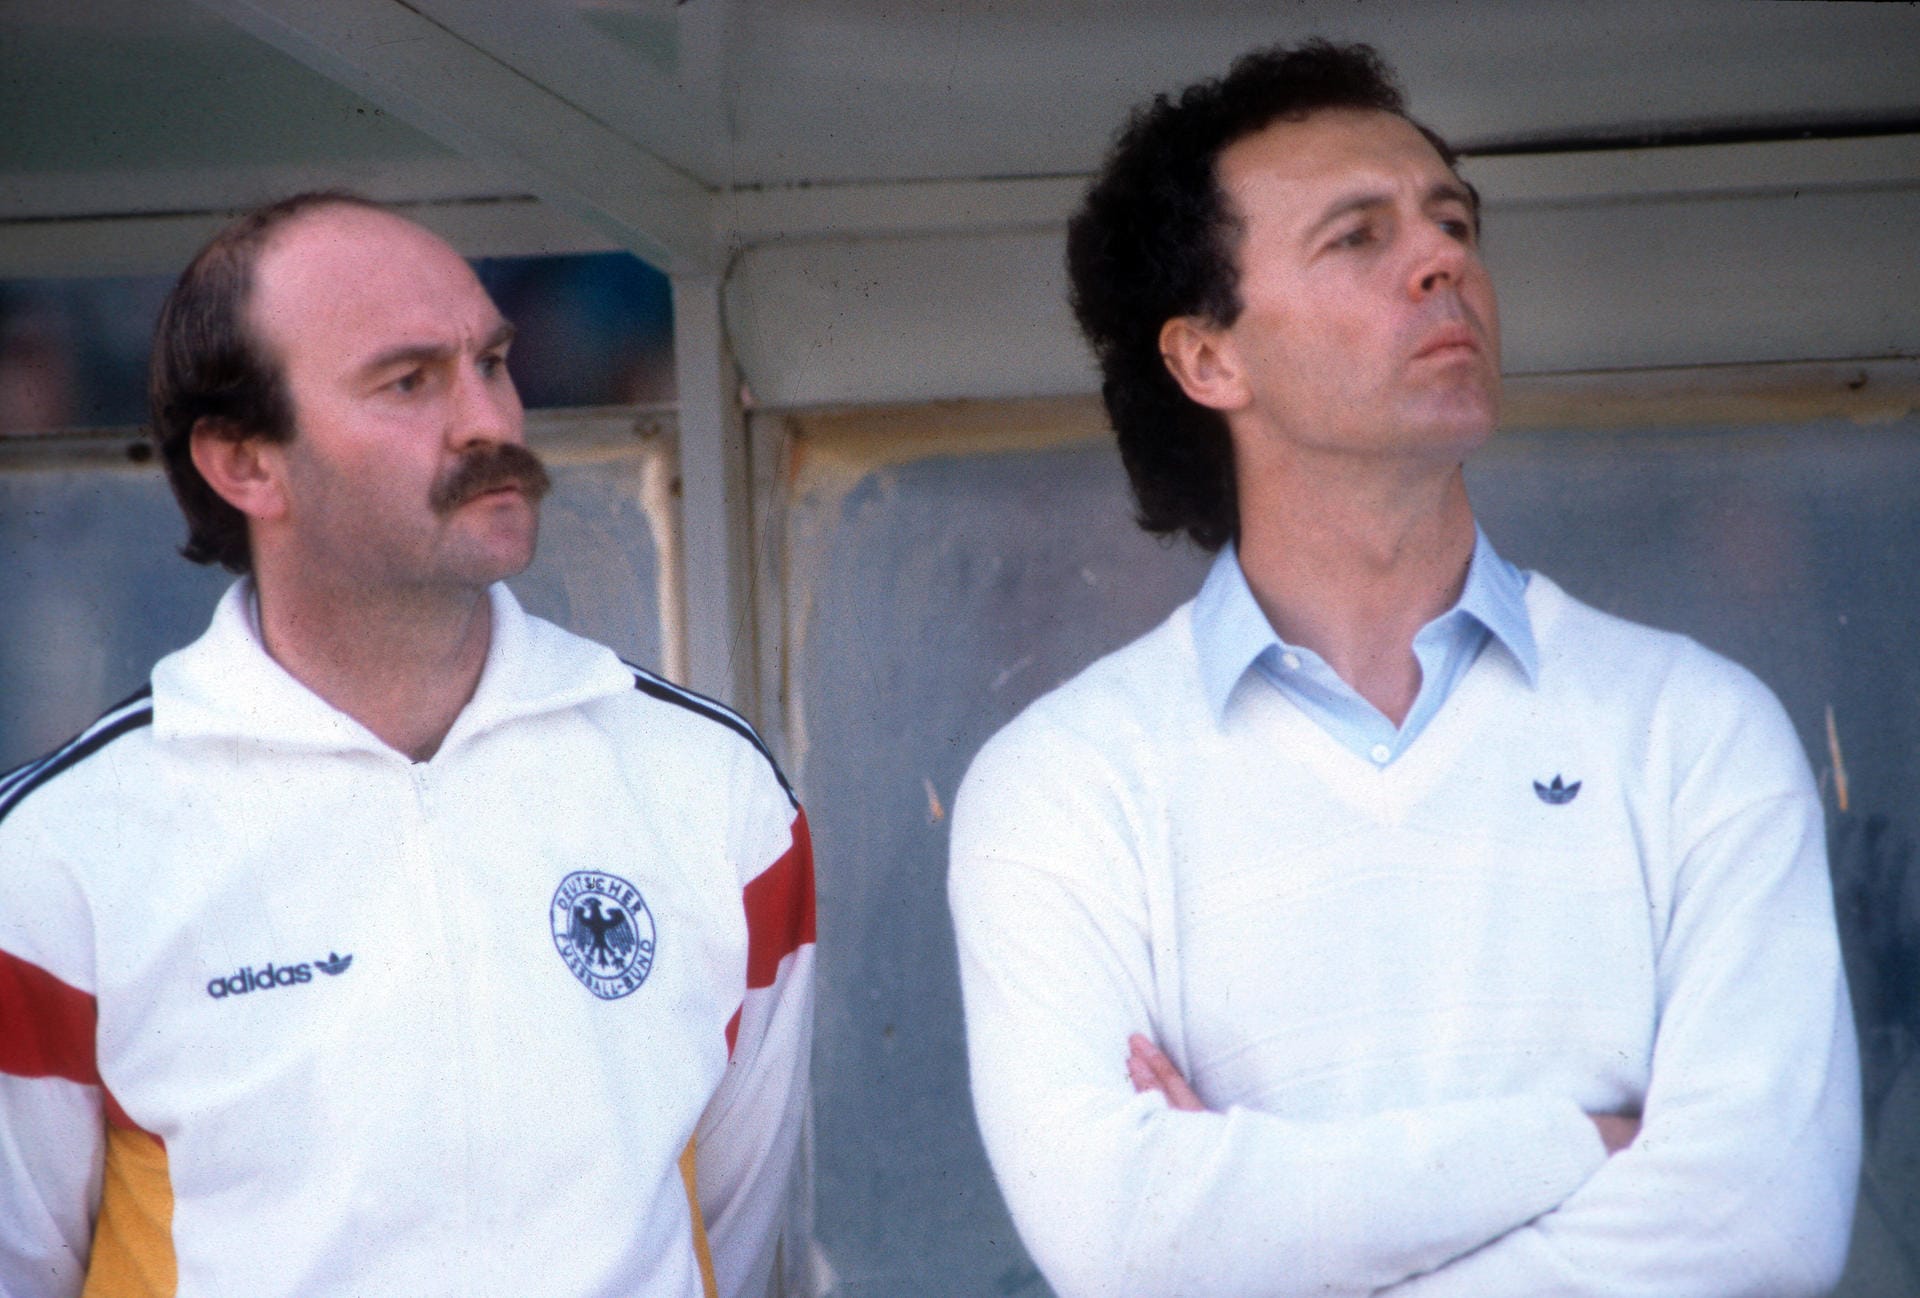 Vom Fußballplatz wechselt Beckenbauer 1984 auf die Trainerbank der deutschen Nationalmannschaft. Da Beckenbauer keinen Trainerschein besitzt, wird die Position des Teamchefs geschaffen. Der offizielle Bundestrainer heißt bei Beckenbauers Debüt Horst Köppel. Das erste Spiel verliert Beckenbauer gegen Argentinien mit 1:3.